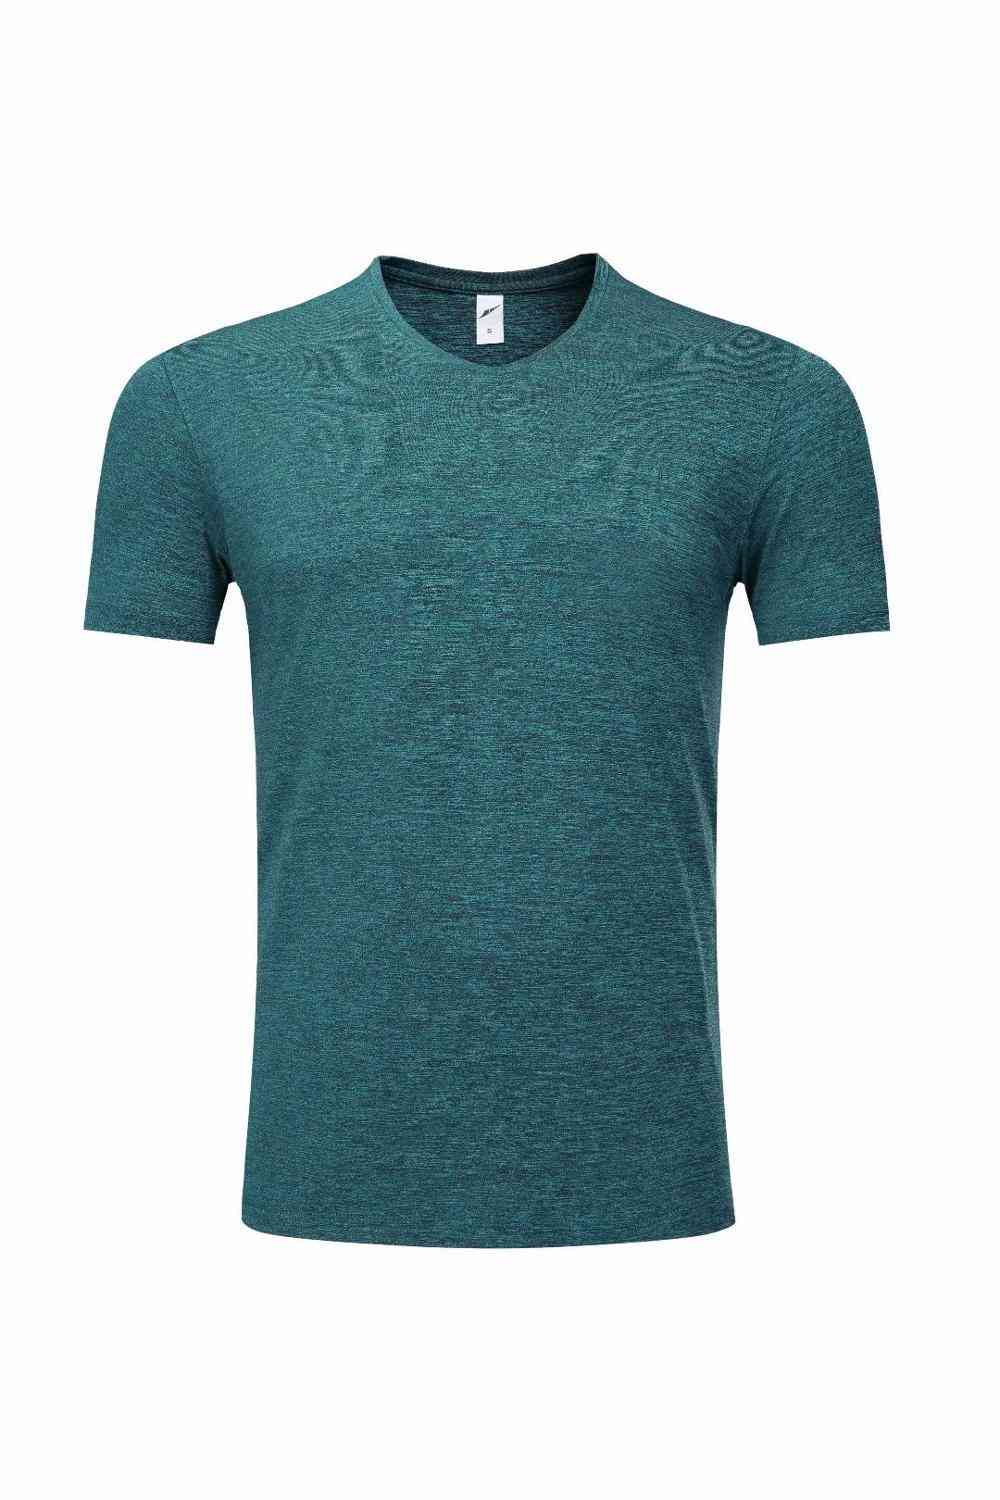 T-shirt allenamento blu lago